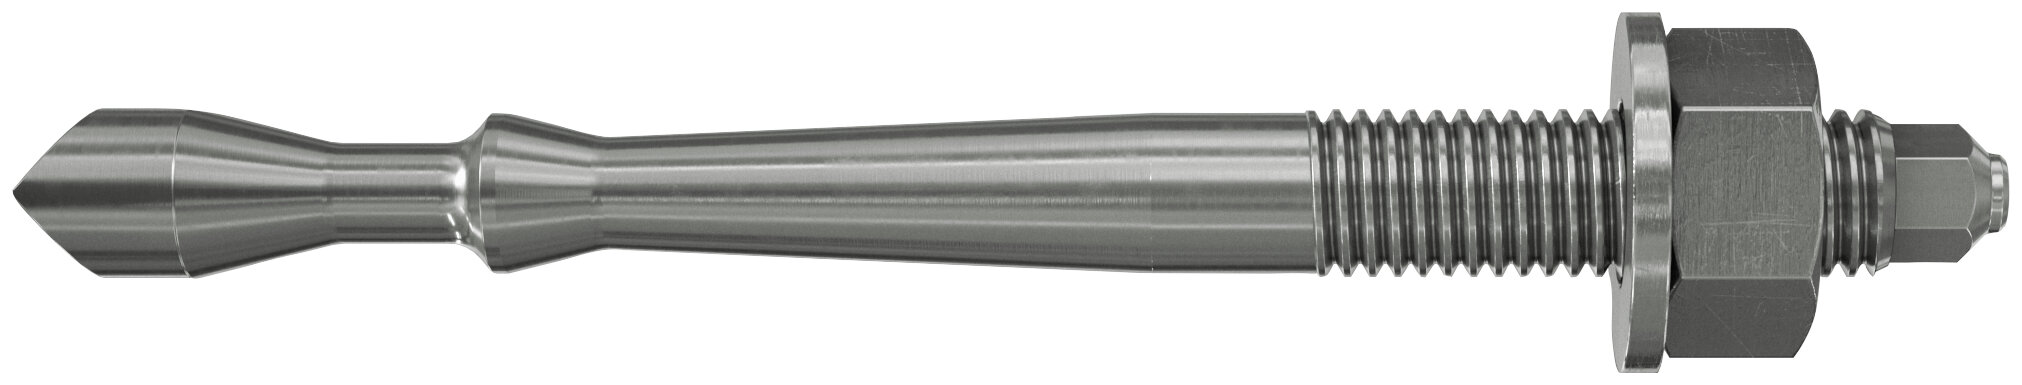 Highbond-Anker FHB II A-S C (hochkorrosionsbeständiger Stahl)